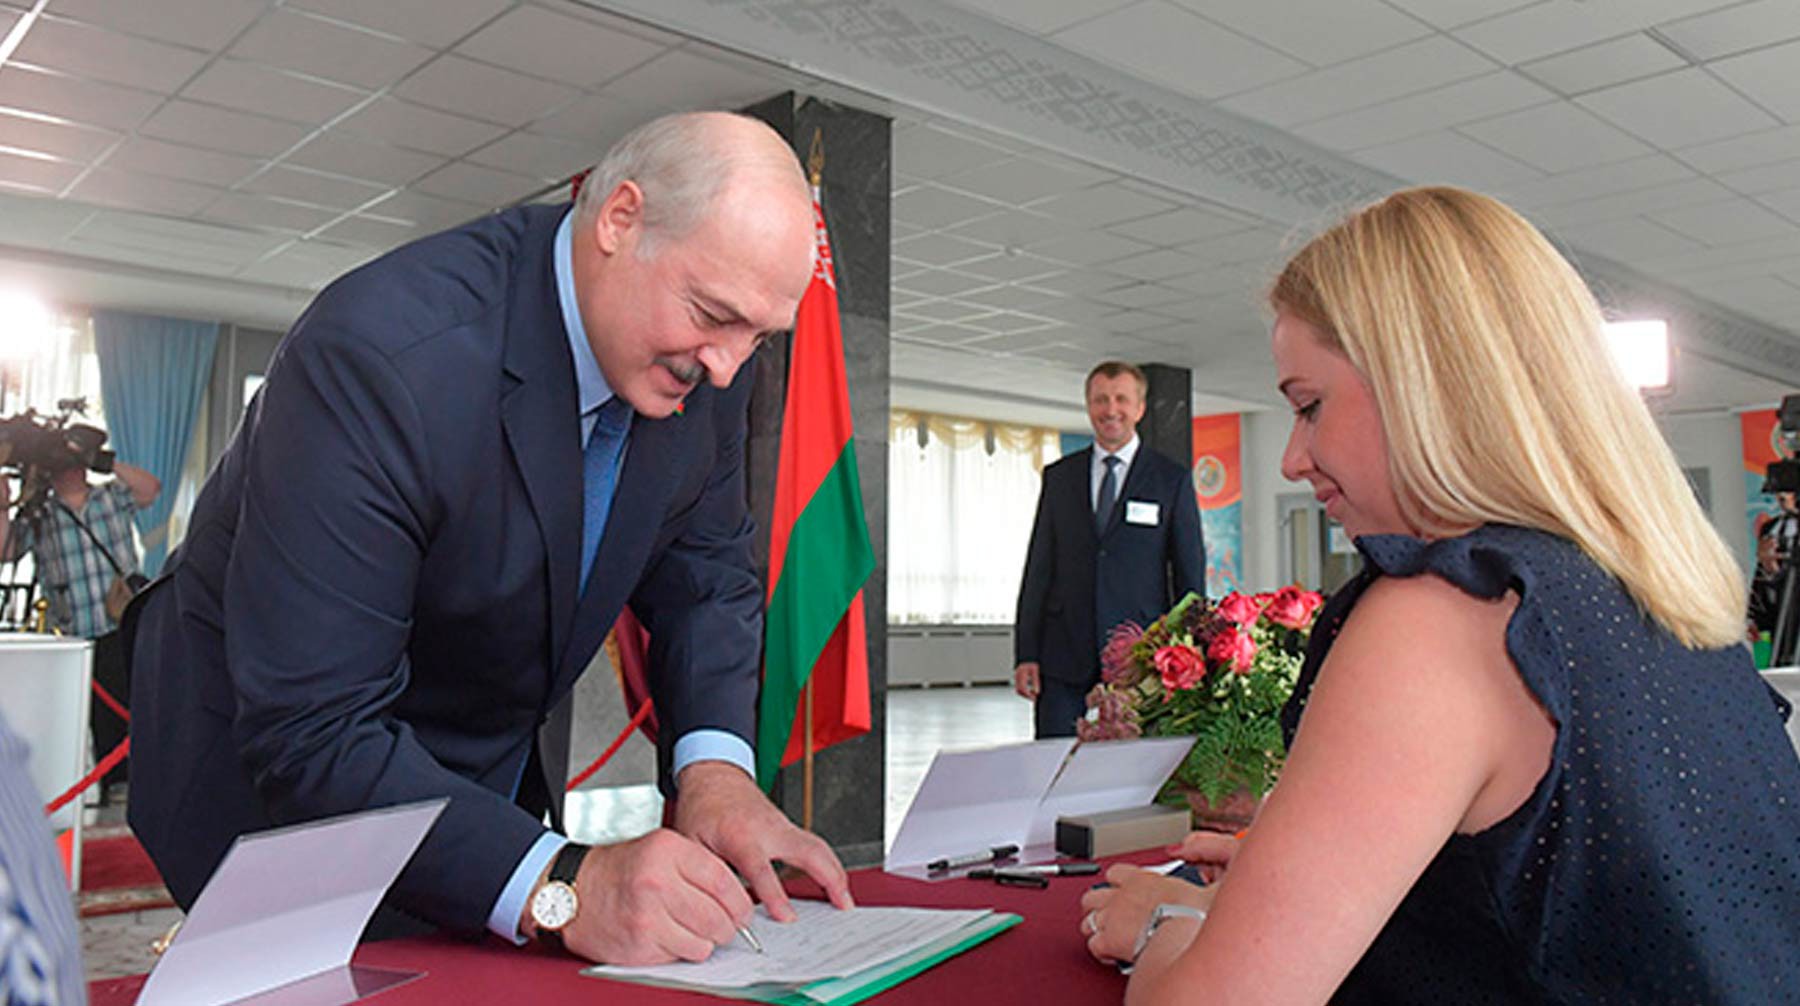 Dailystorm - Белорусская оппозиция позволит Лукашенко участвовать в повторных выборах